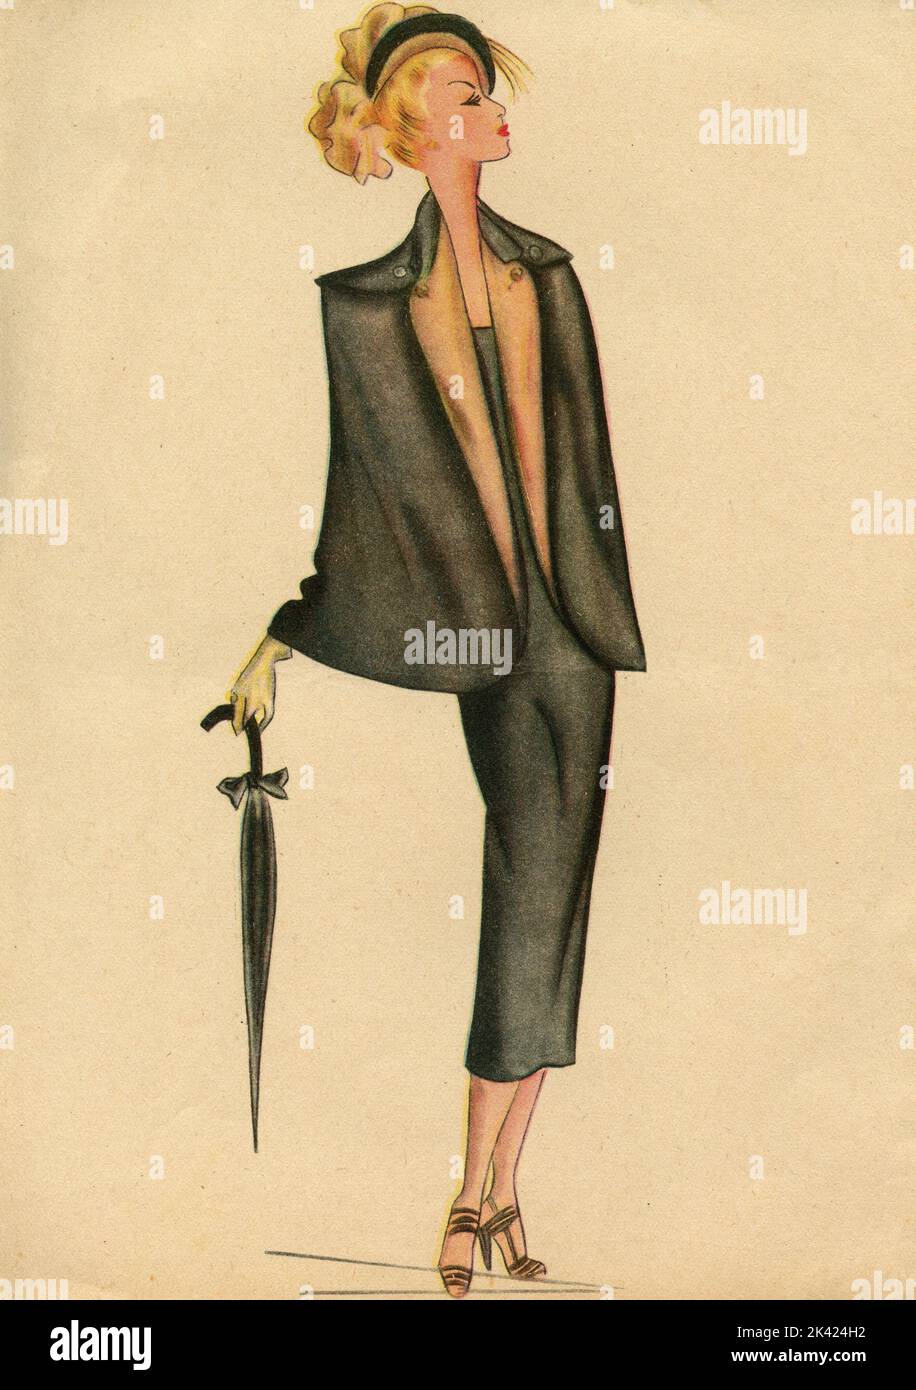 Femme dessin d'illustration de mode: Croquis de vêtements et accessoires, Italie 1940s Banque D'Images